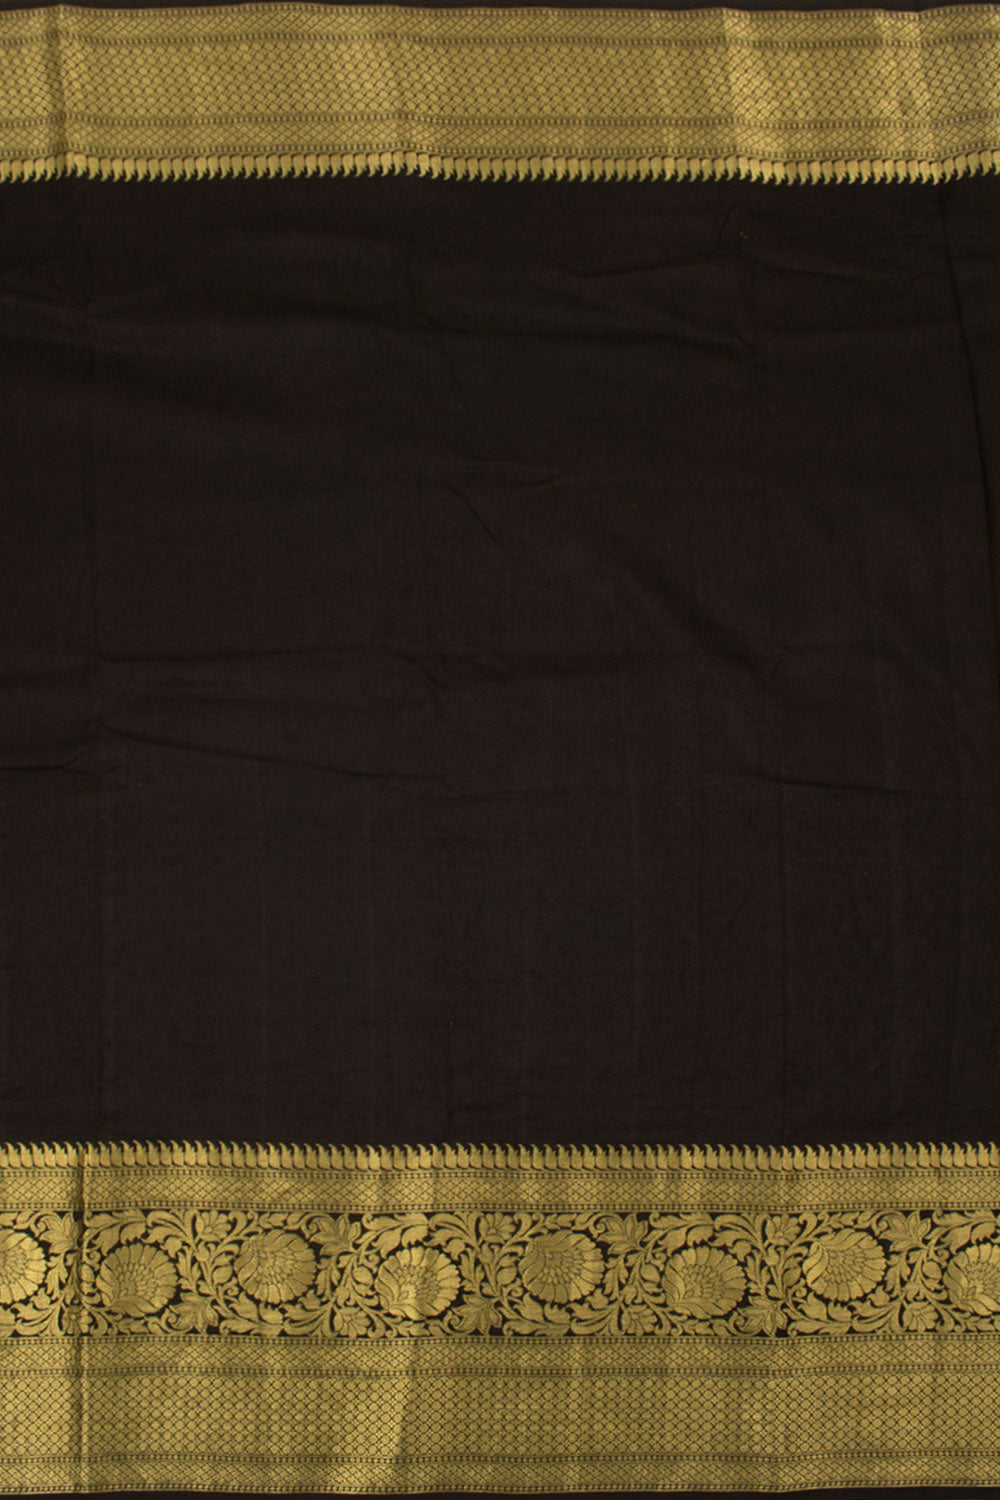 Embroidered Kanjivaram Pure Silk Saree 10058223